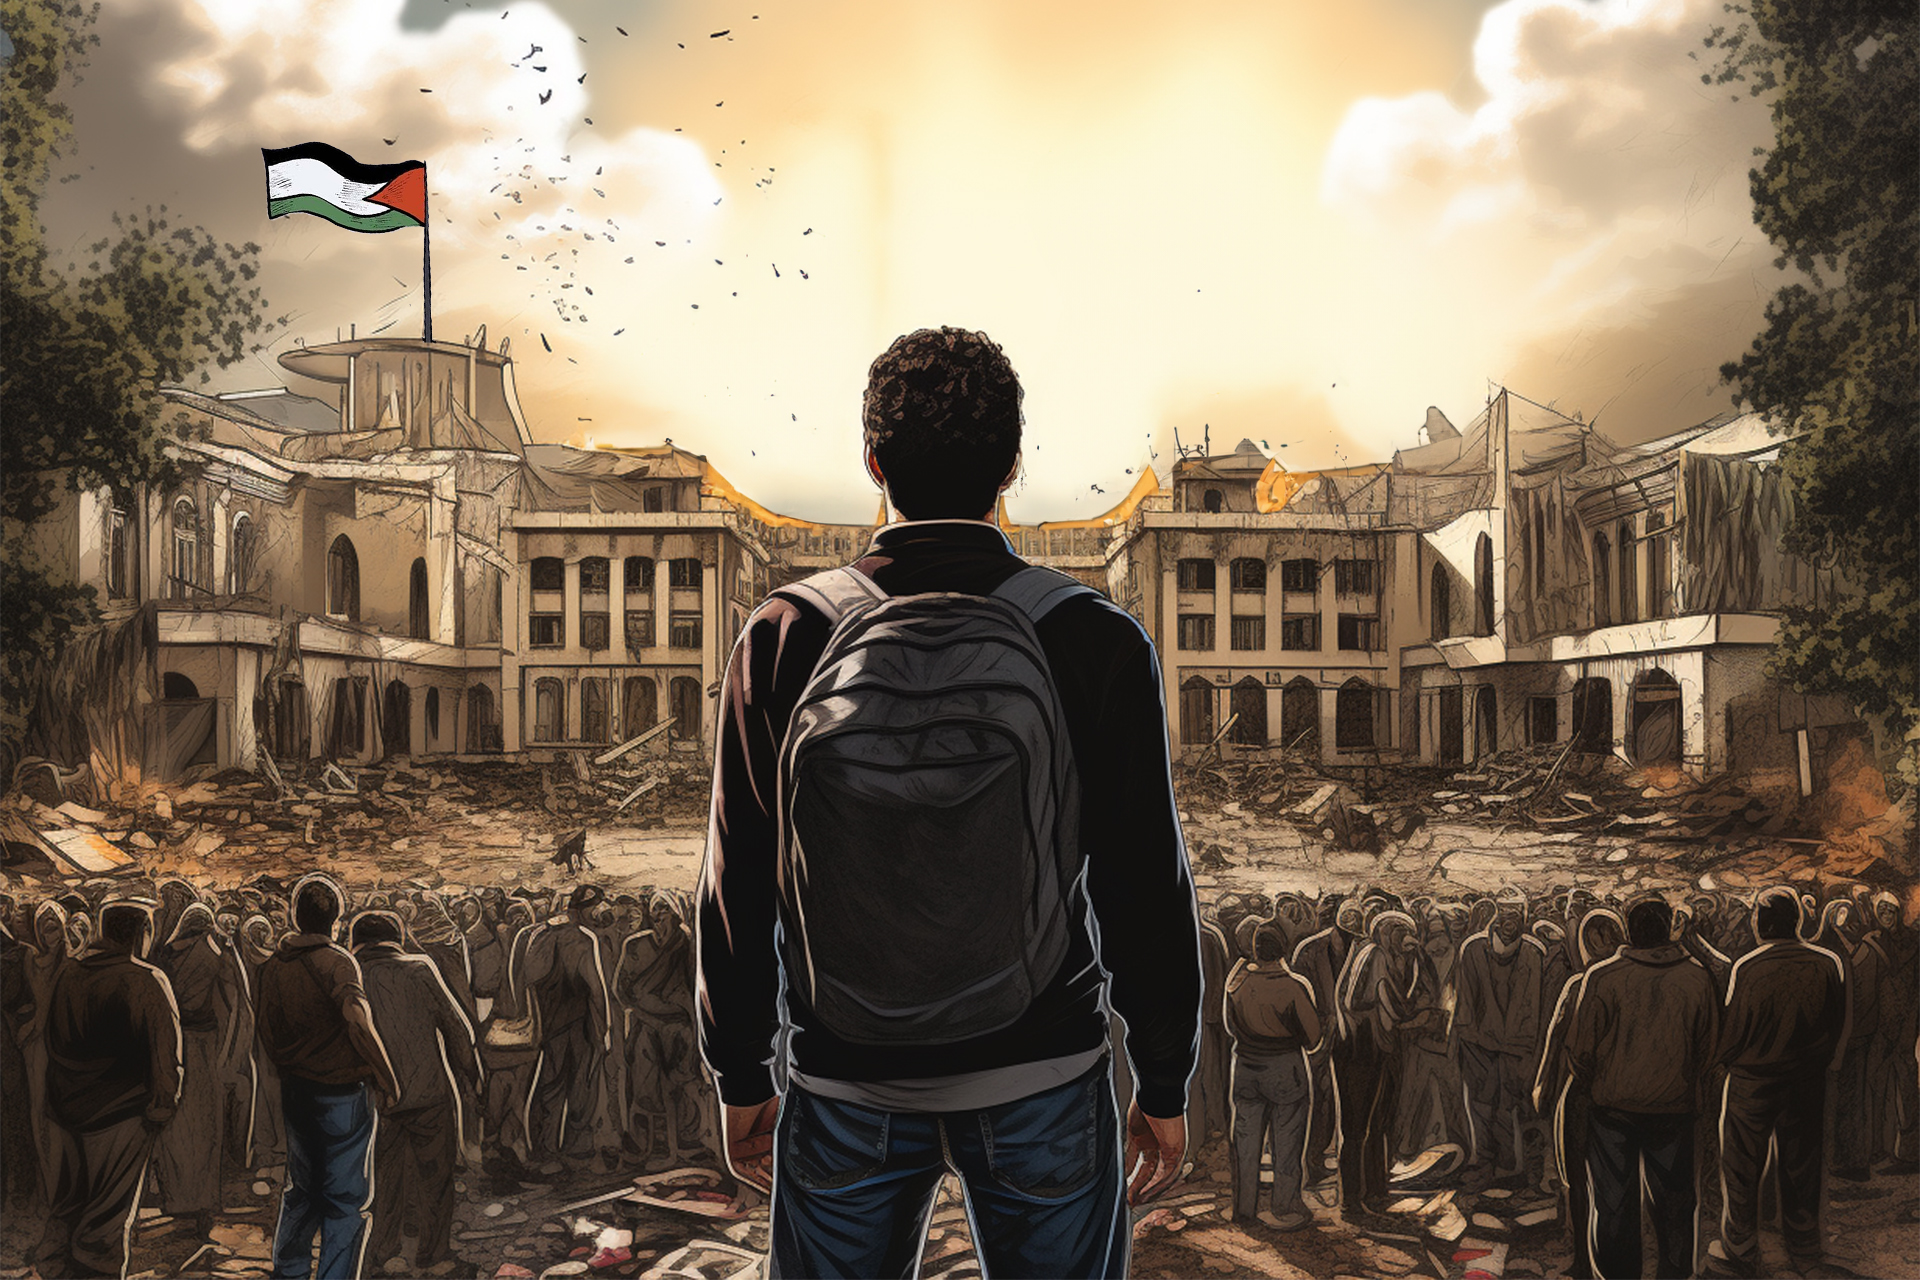 مقاومة التحييد: الحركة الطلابية في الضفة الغربية | سياسة – البوكس نيوز